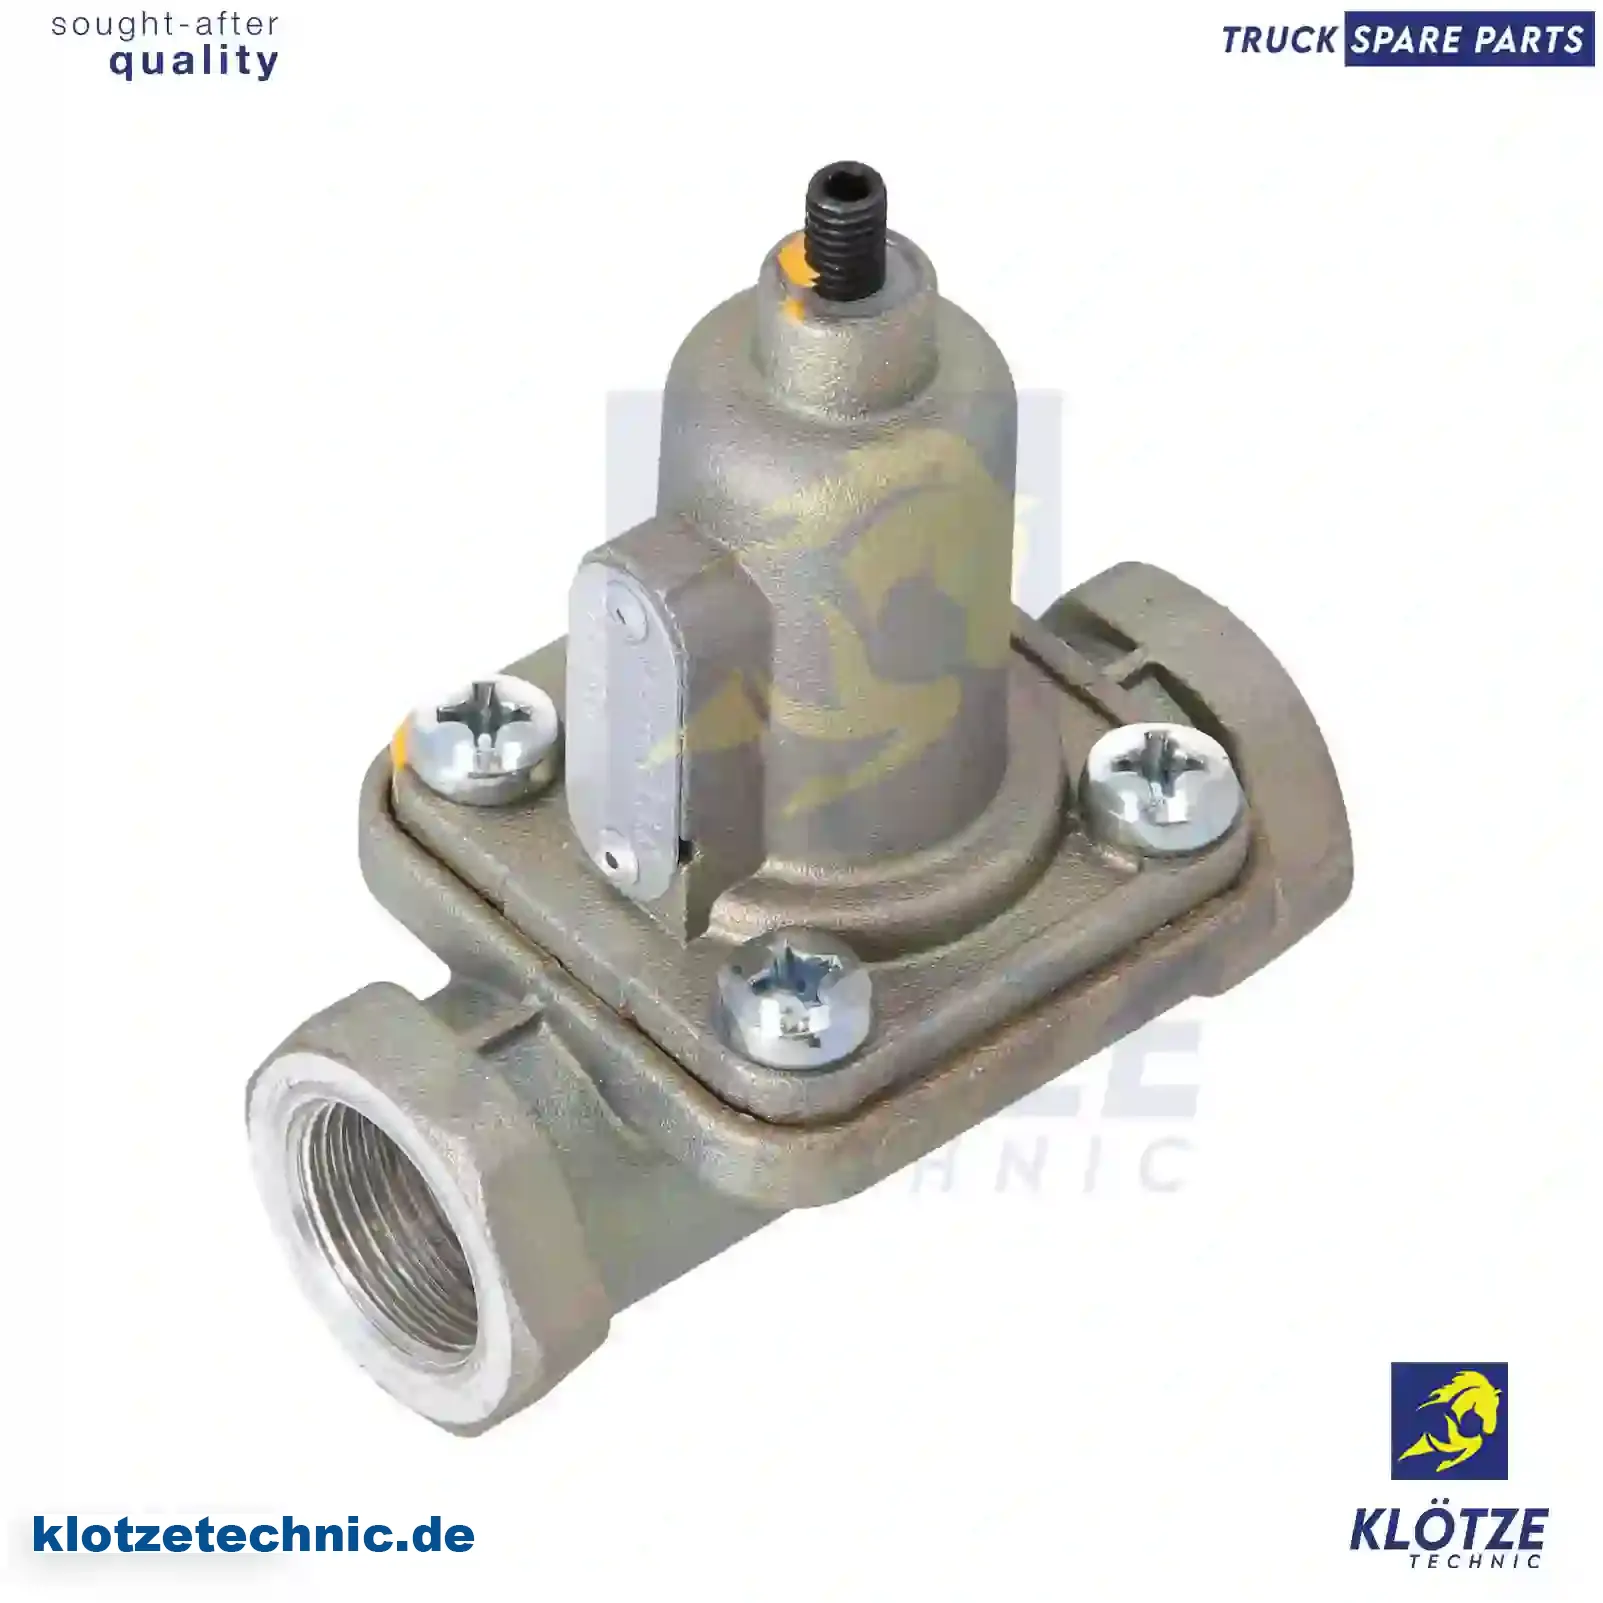 Overflow valve, 54291844 || Klötze Technic